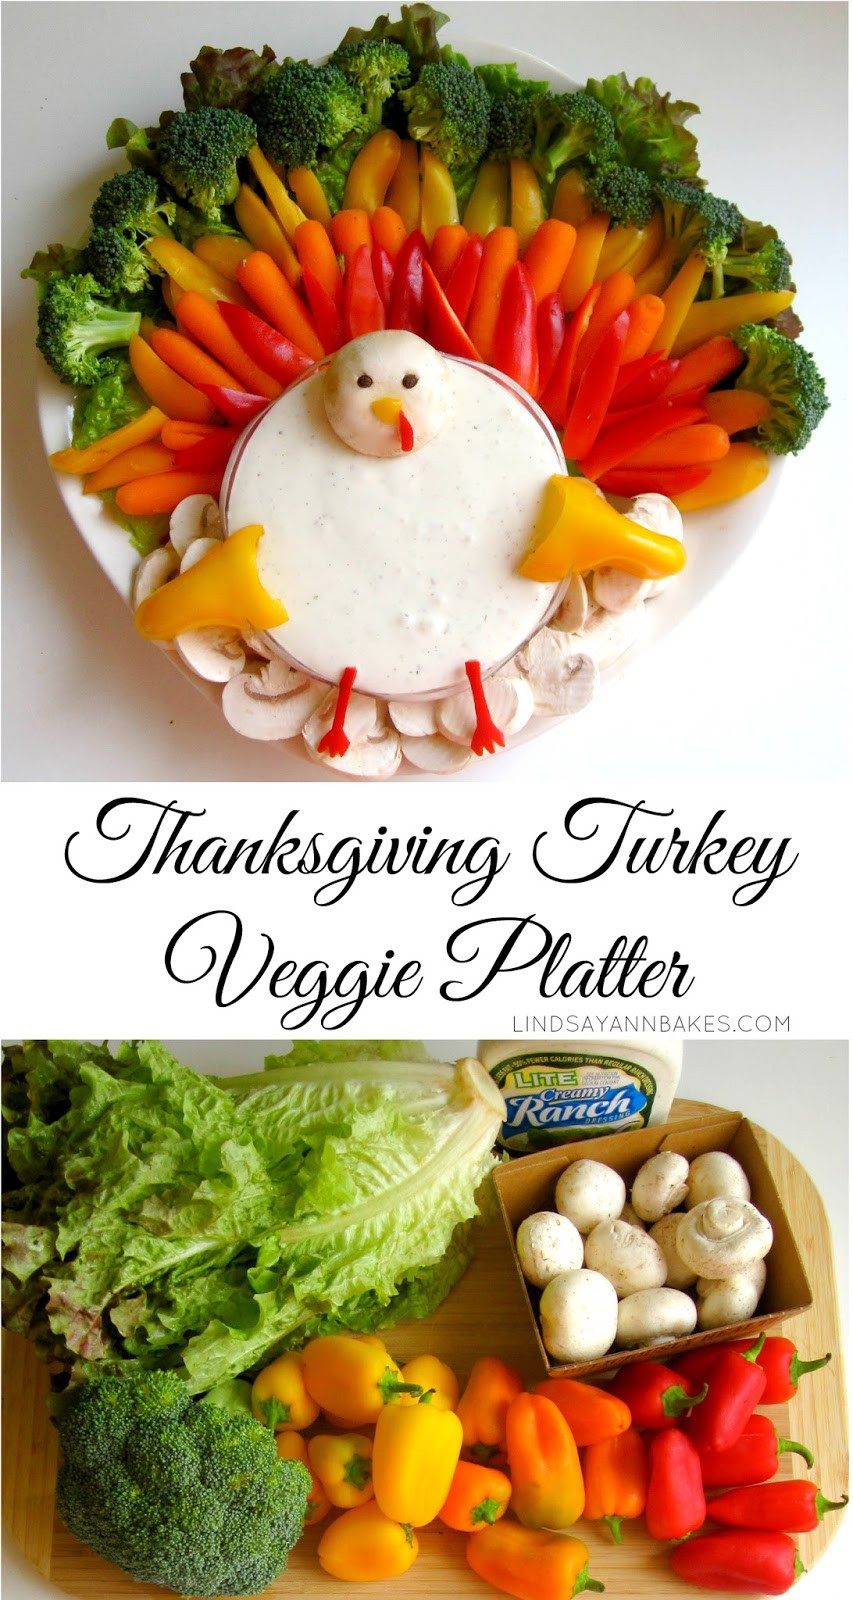 Turkey Platters Thanksgiving
 Thanksgiving Turkey Veggie Platter Lindsay Ann Bakes